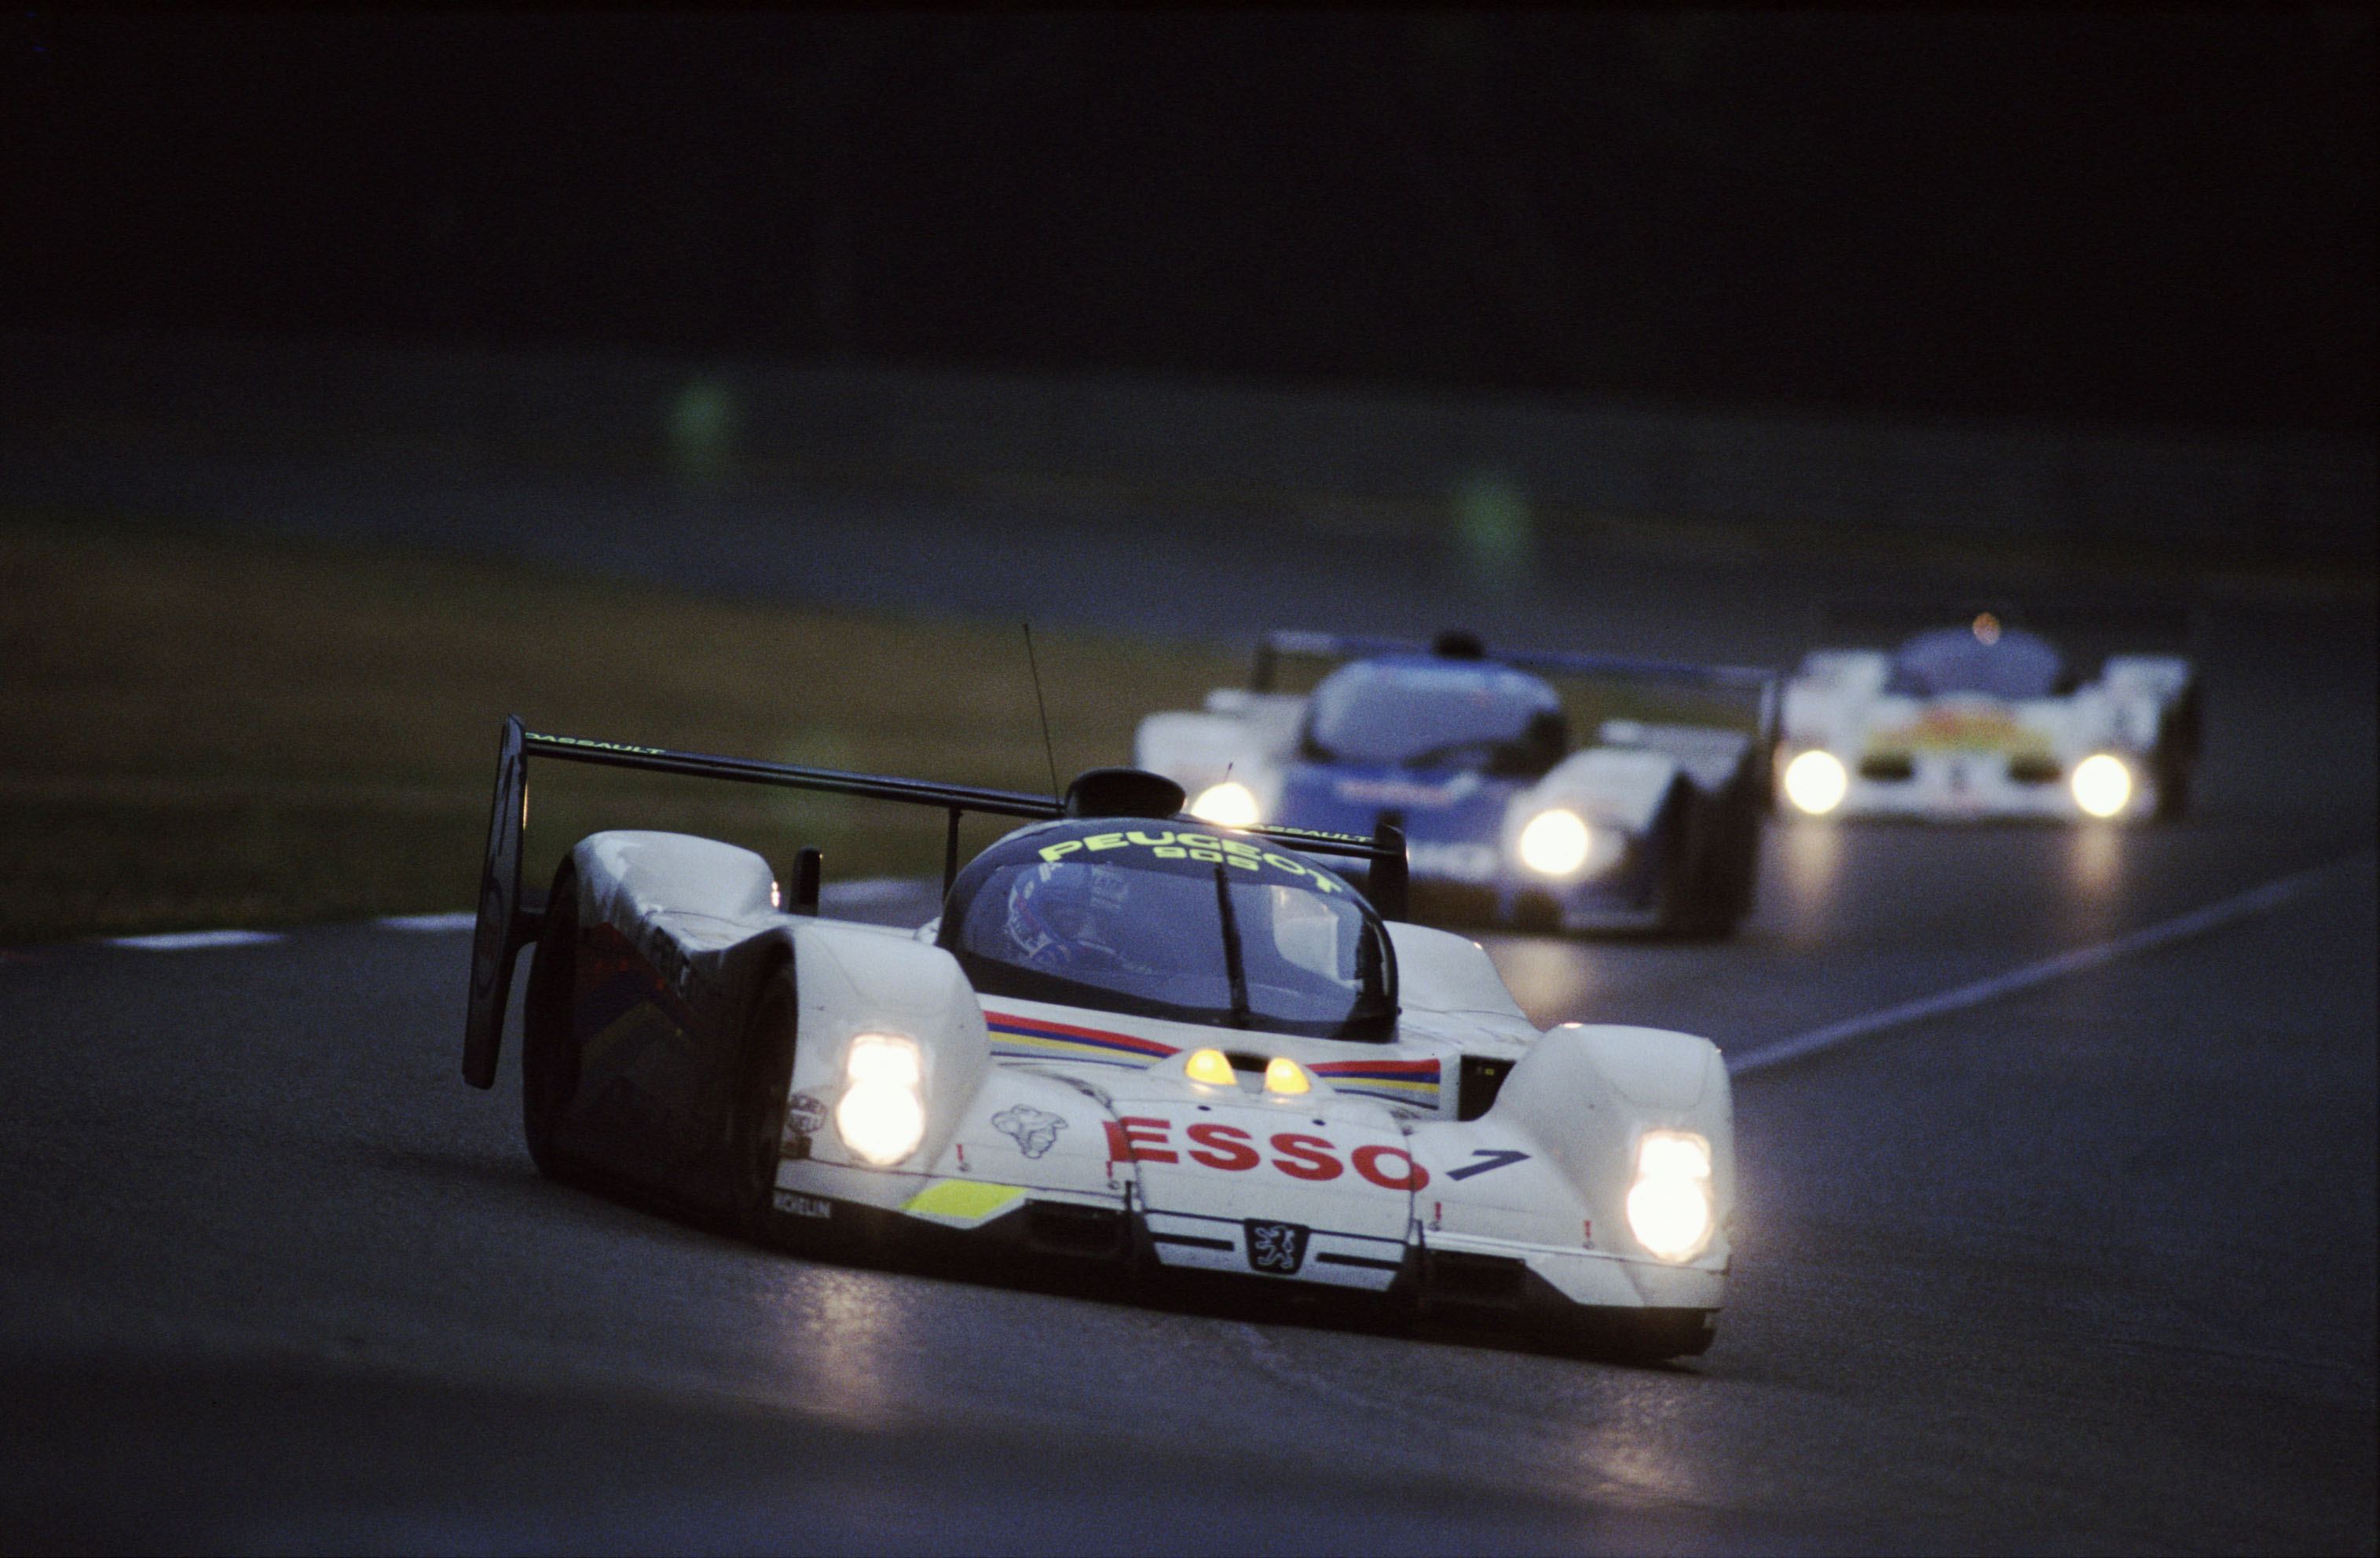 139 – 24 Heures du Mans 1992. Warwick/ Dalmas/ Blundell. Peugeot 905. Vainqueur